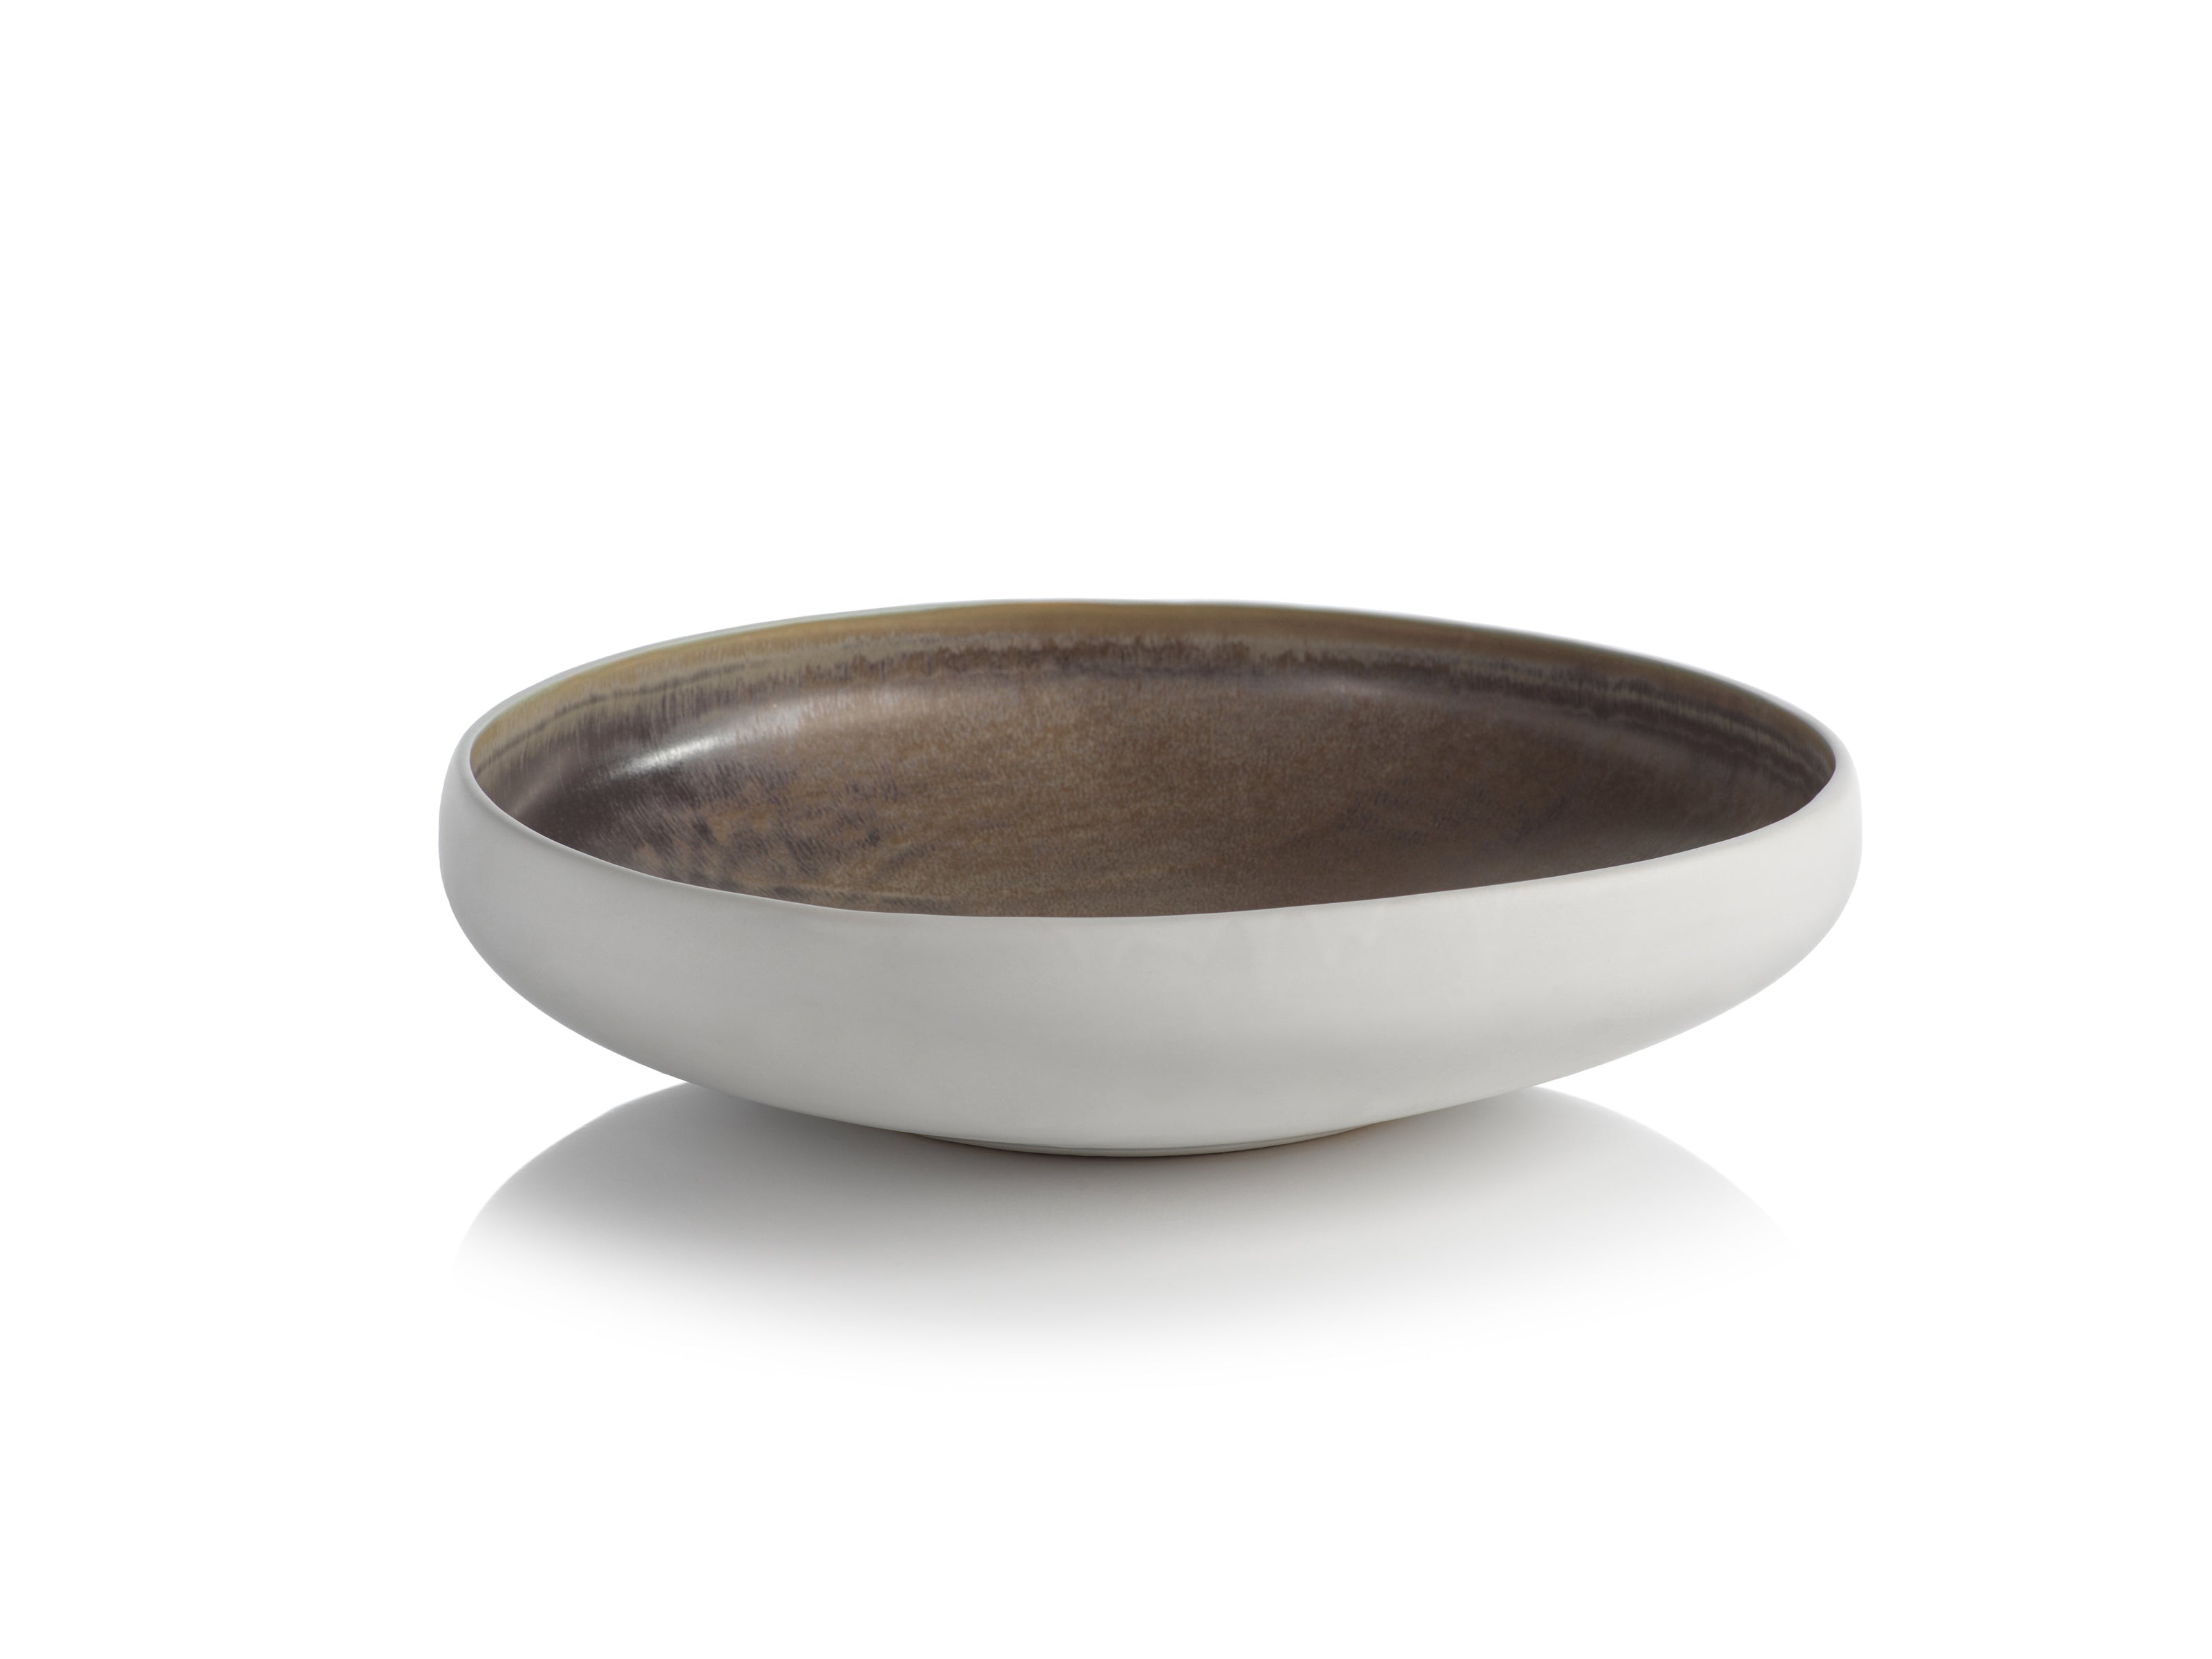 Sahara Ceramic Serving Bowl - CARLYLE AVENUE